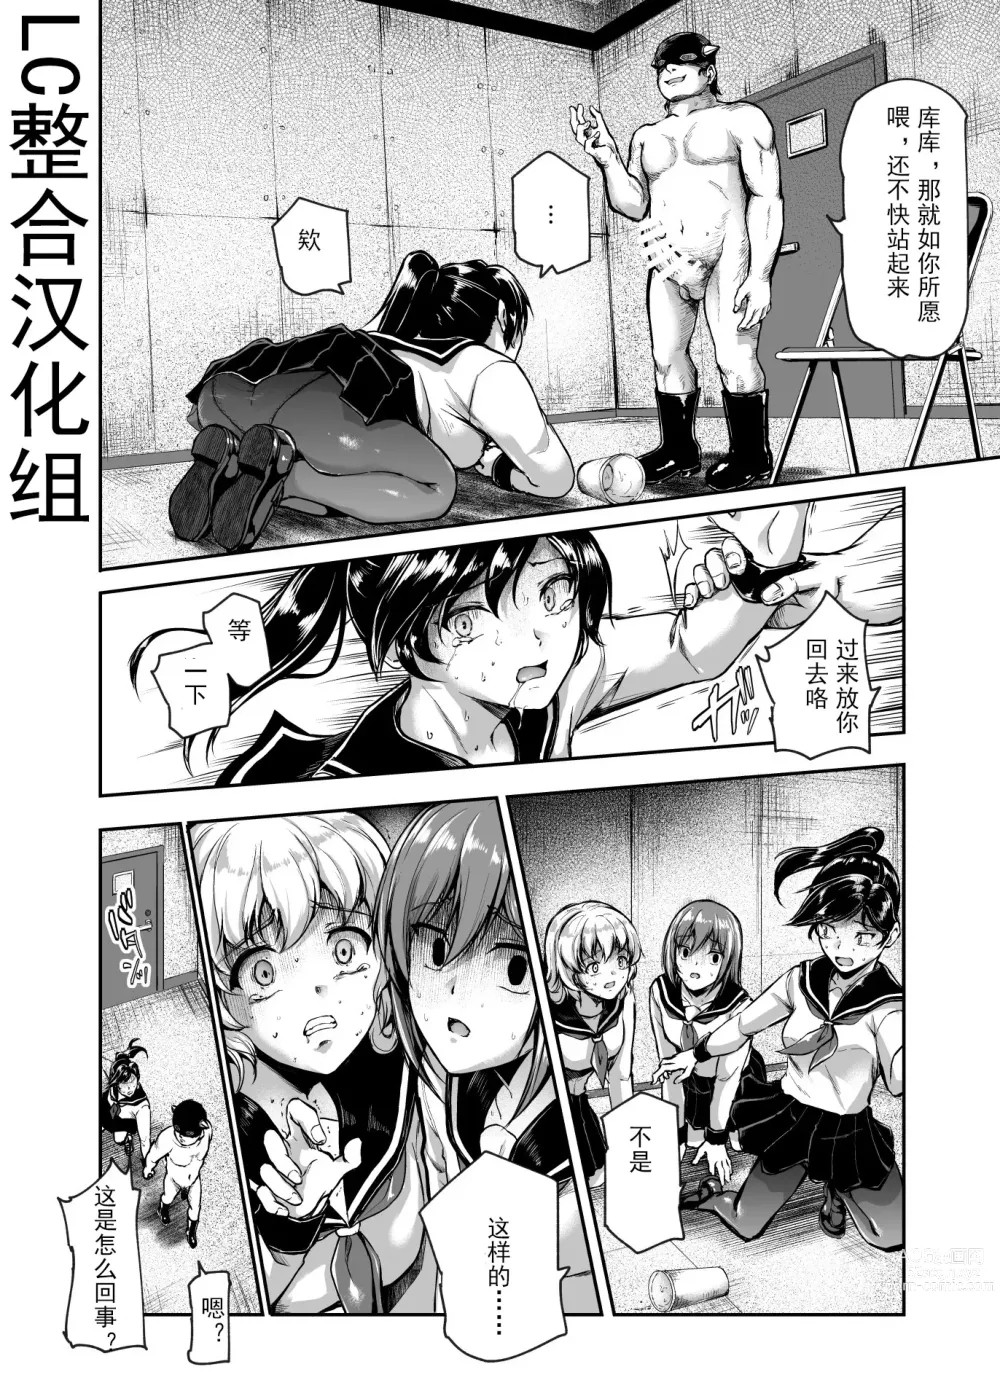 Page 20 of doujinshi 进入邪恶组织工作的话，就可以放肆享受女人性爱自助了吗?EX